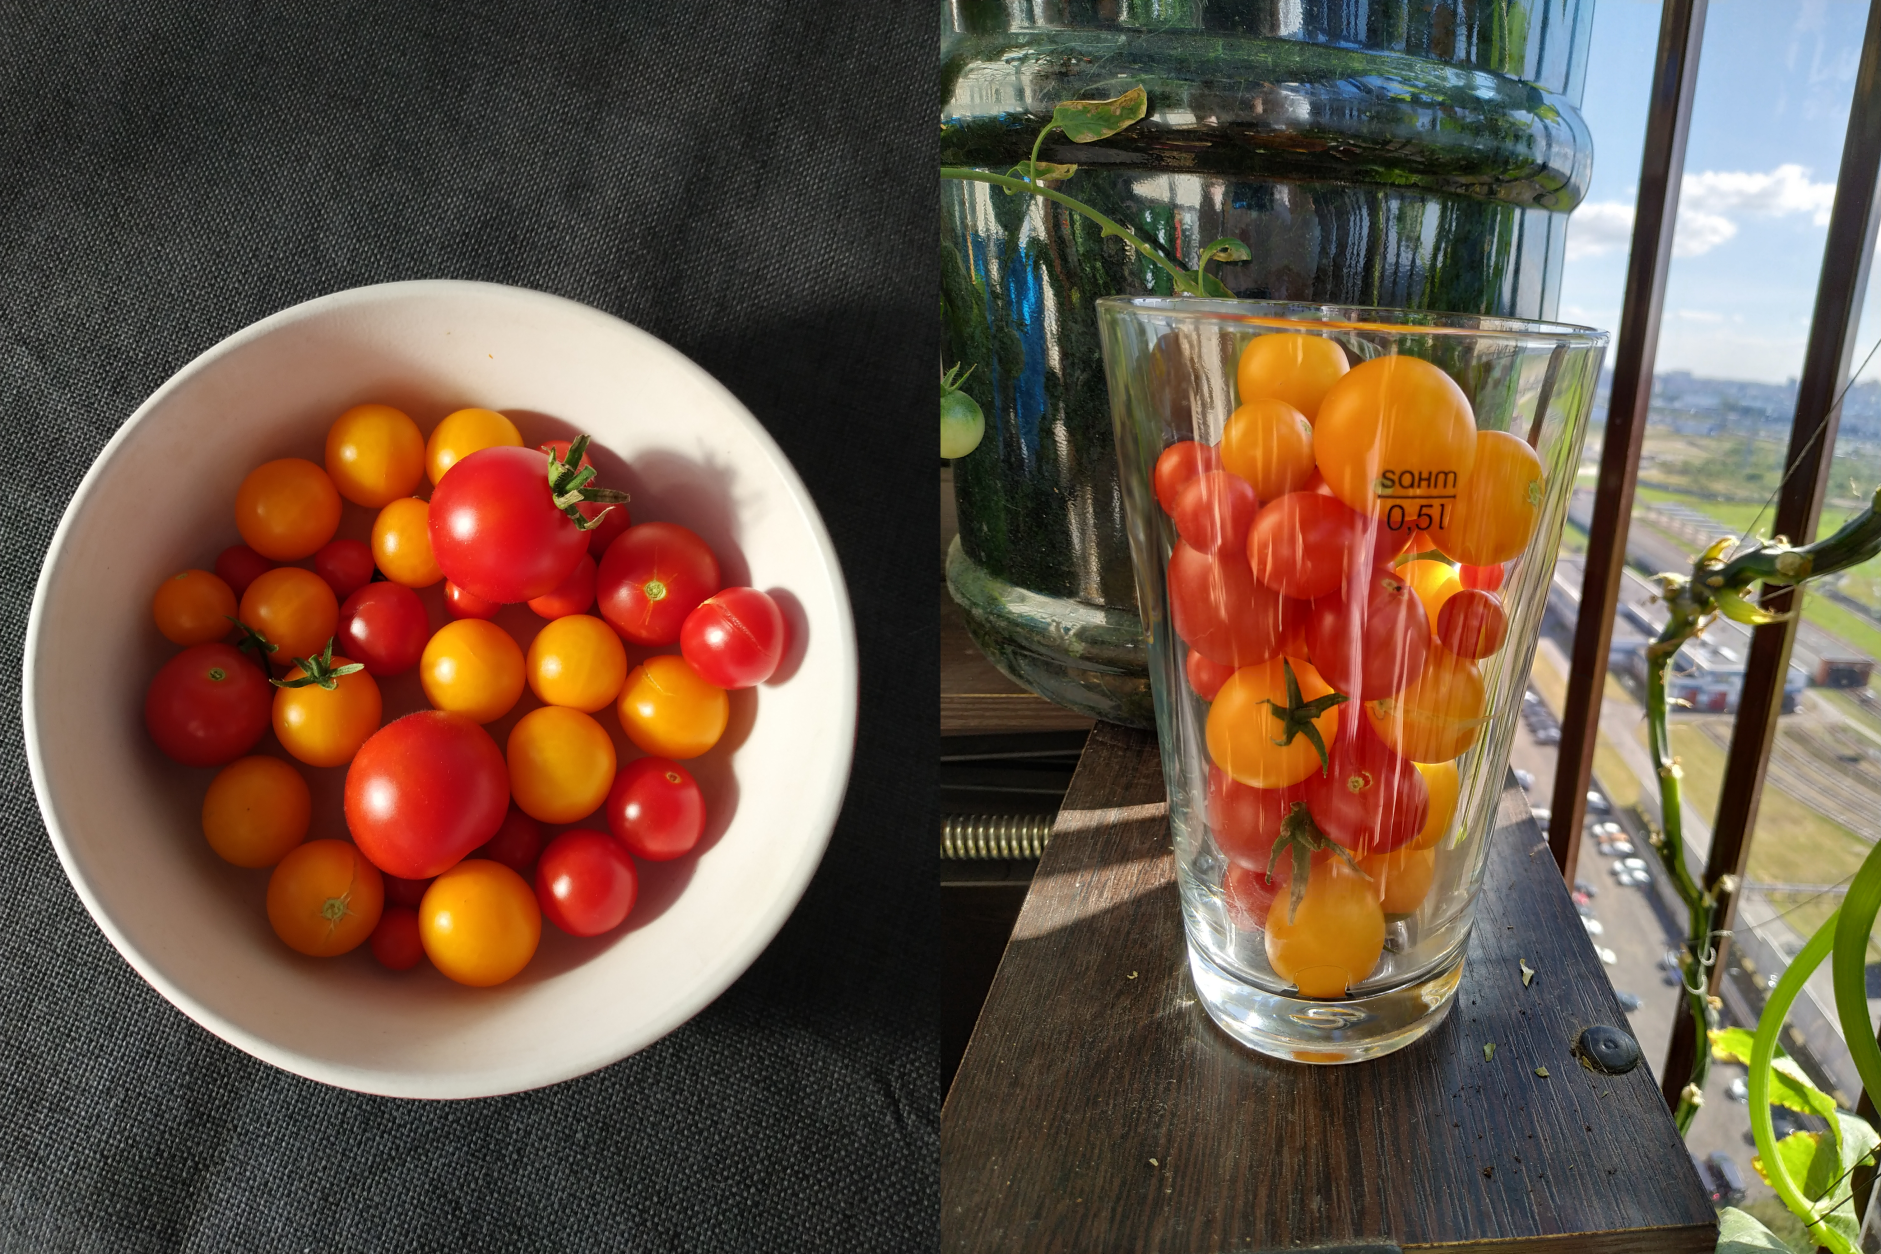 Как посадить и вырастить помидоры на балконе: лучшие сорта и пошаговая инструкция